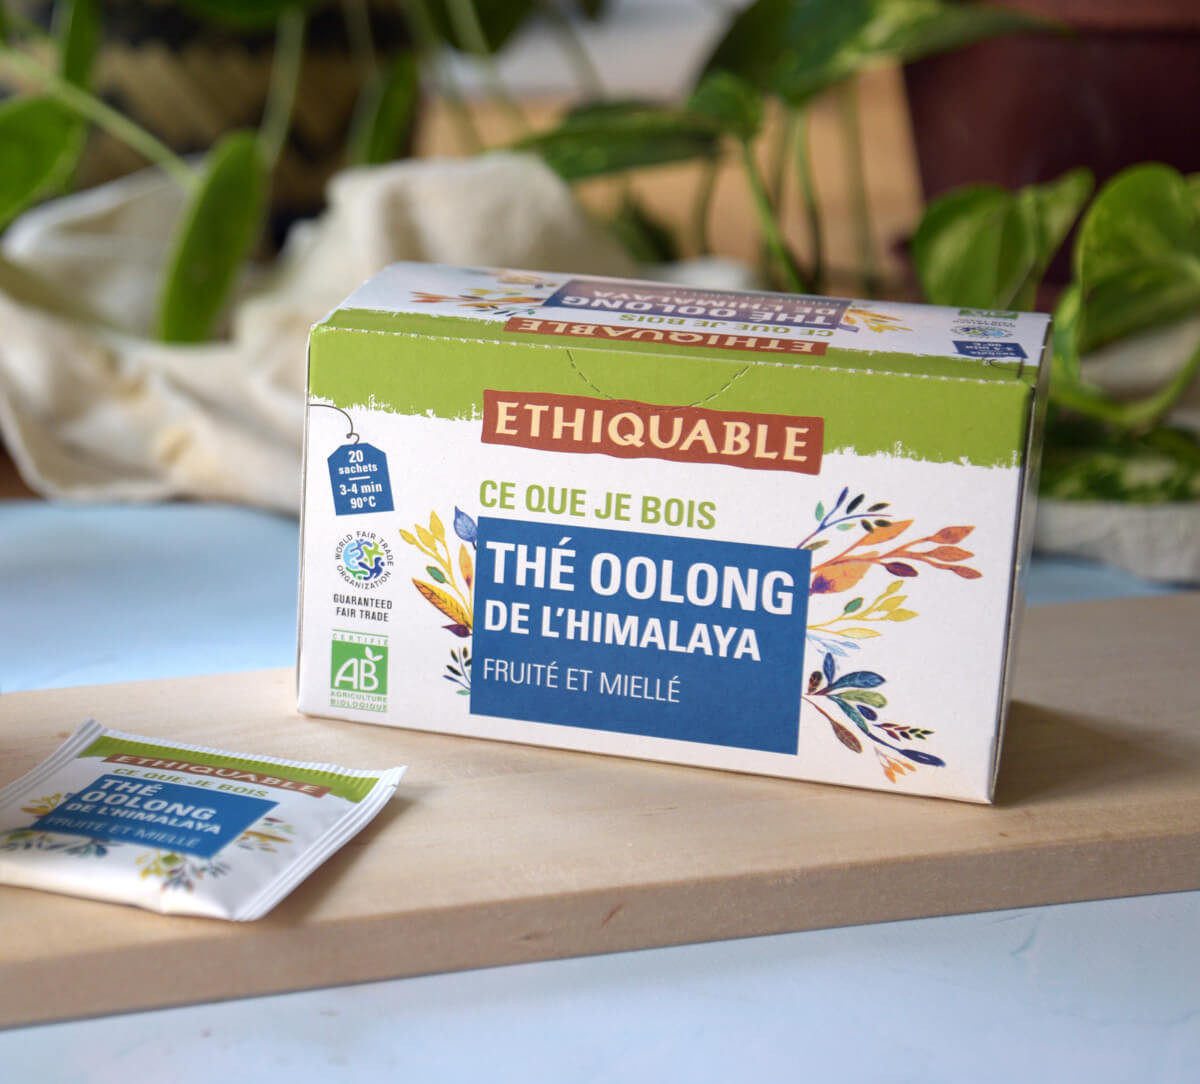 Ethiquable - Thé bleu Oolong bio et issu du Commerce équitable de l'Himalaya